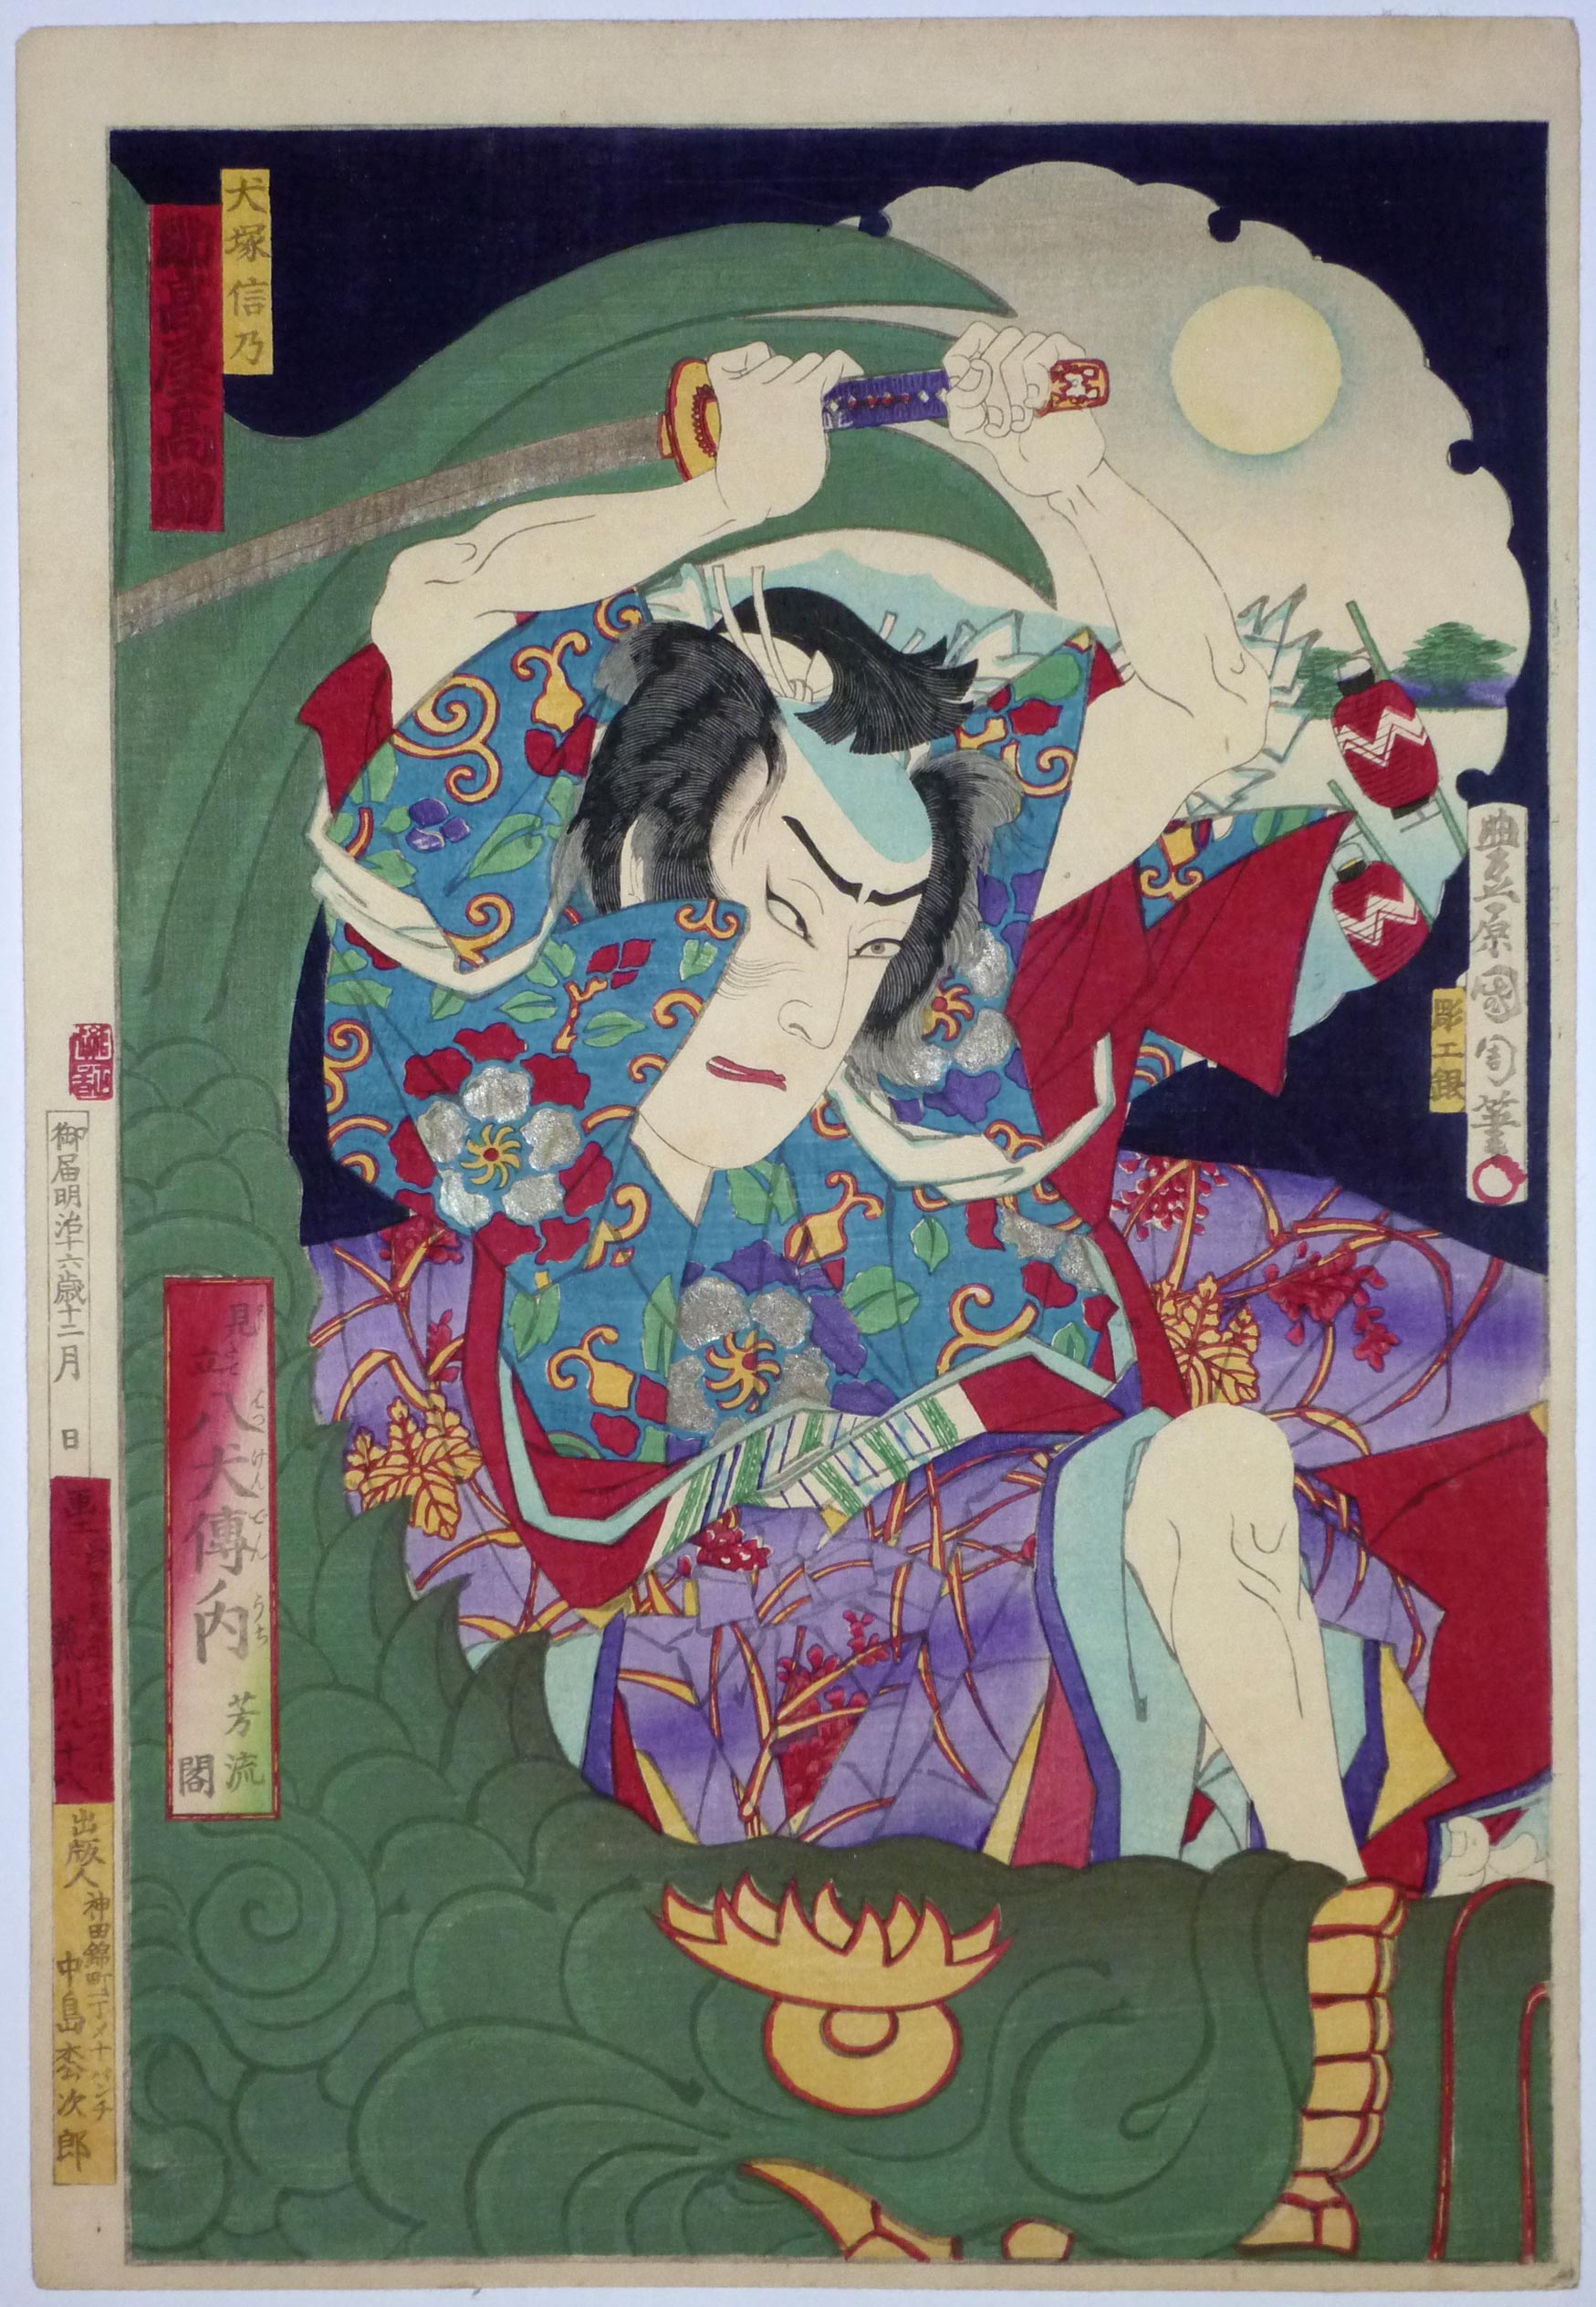 Toyohara Kunichika - Junio 30, 1835 - Julio 1, 1900